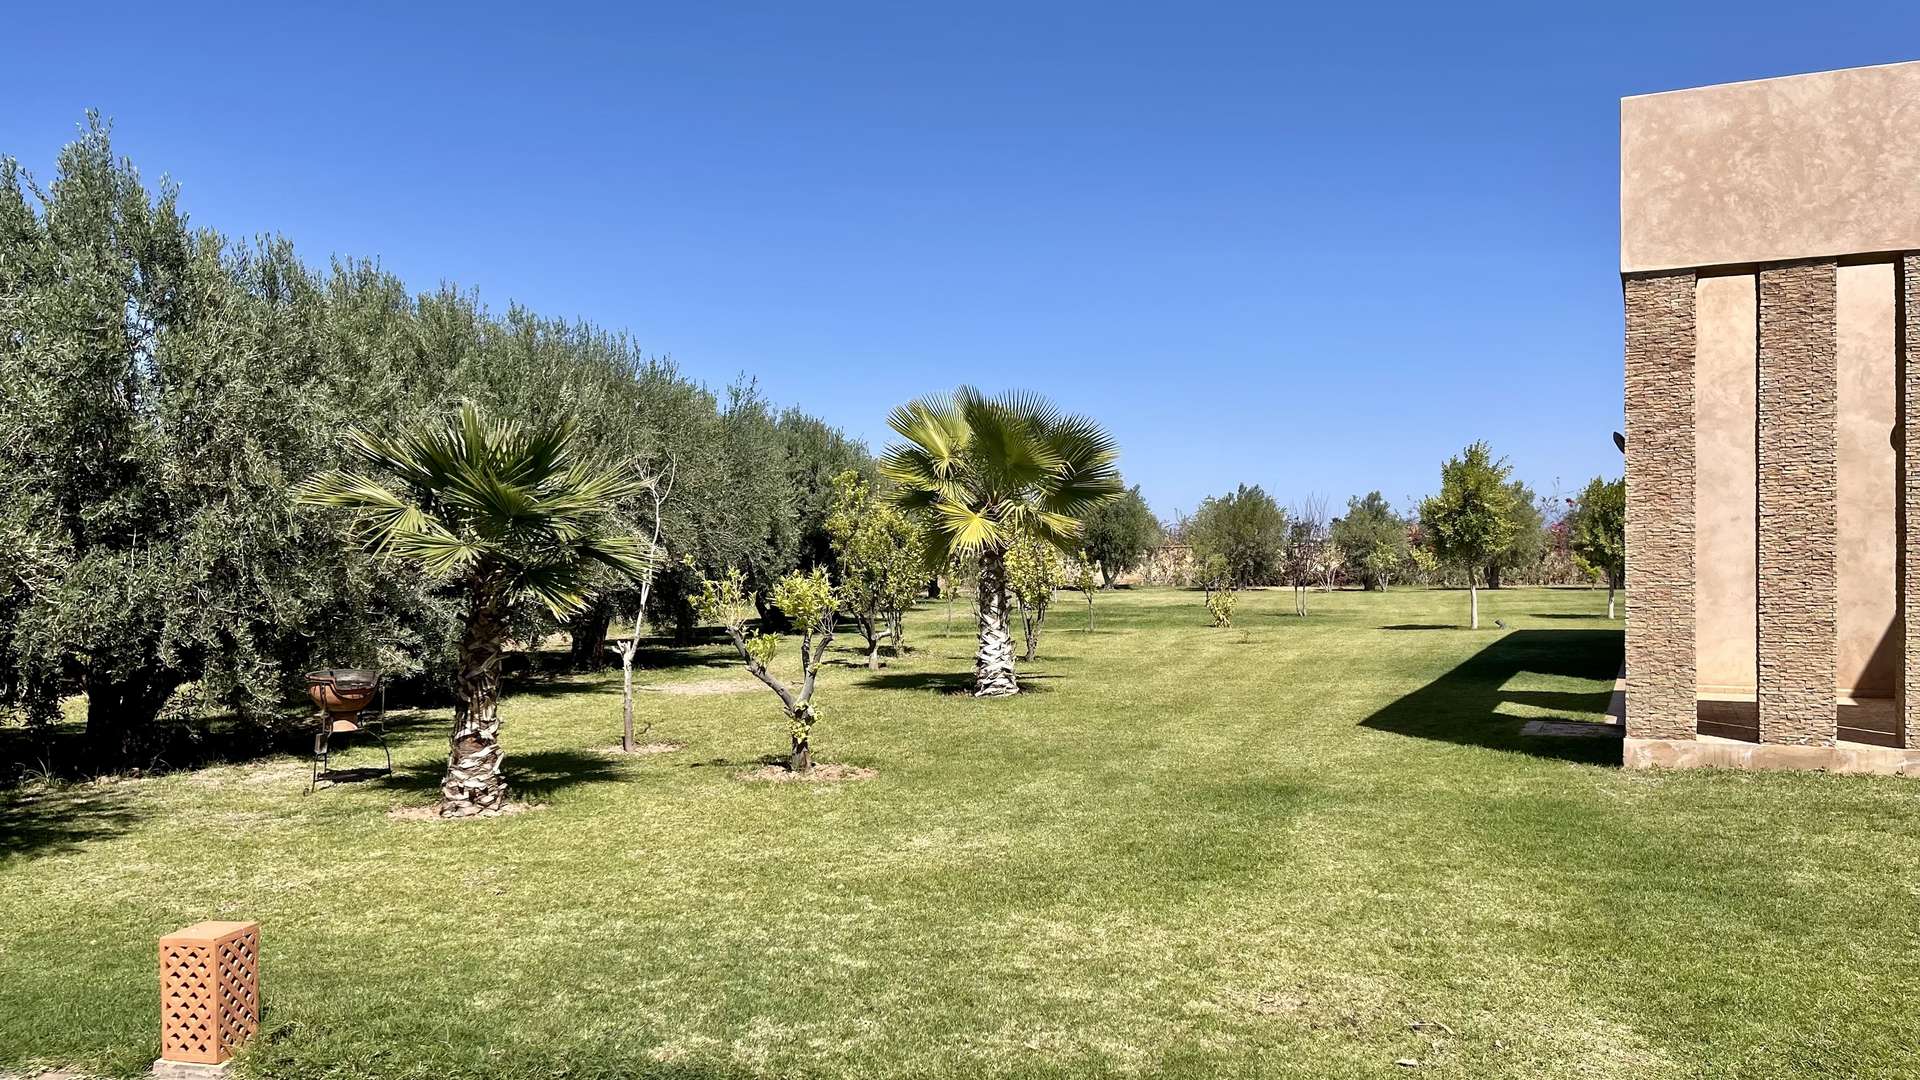 Location de vacances,Villa,Splendide Propriété privée de 5 suites sur un jardin de 6000 M2,Marrakech,Route d'Ouarzazate